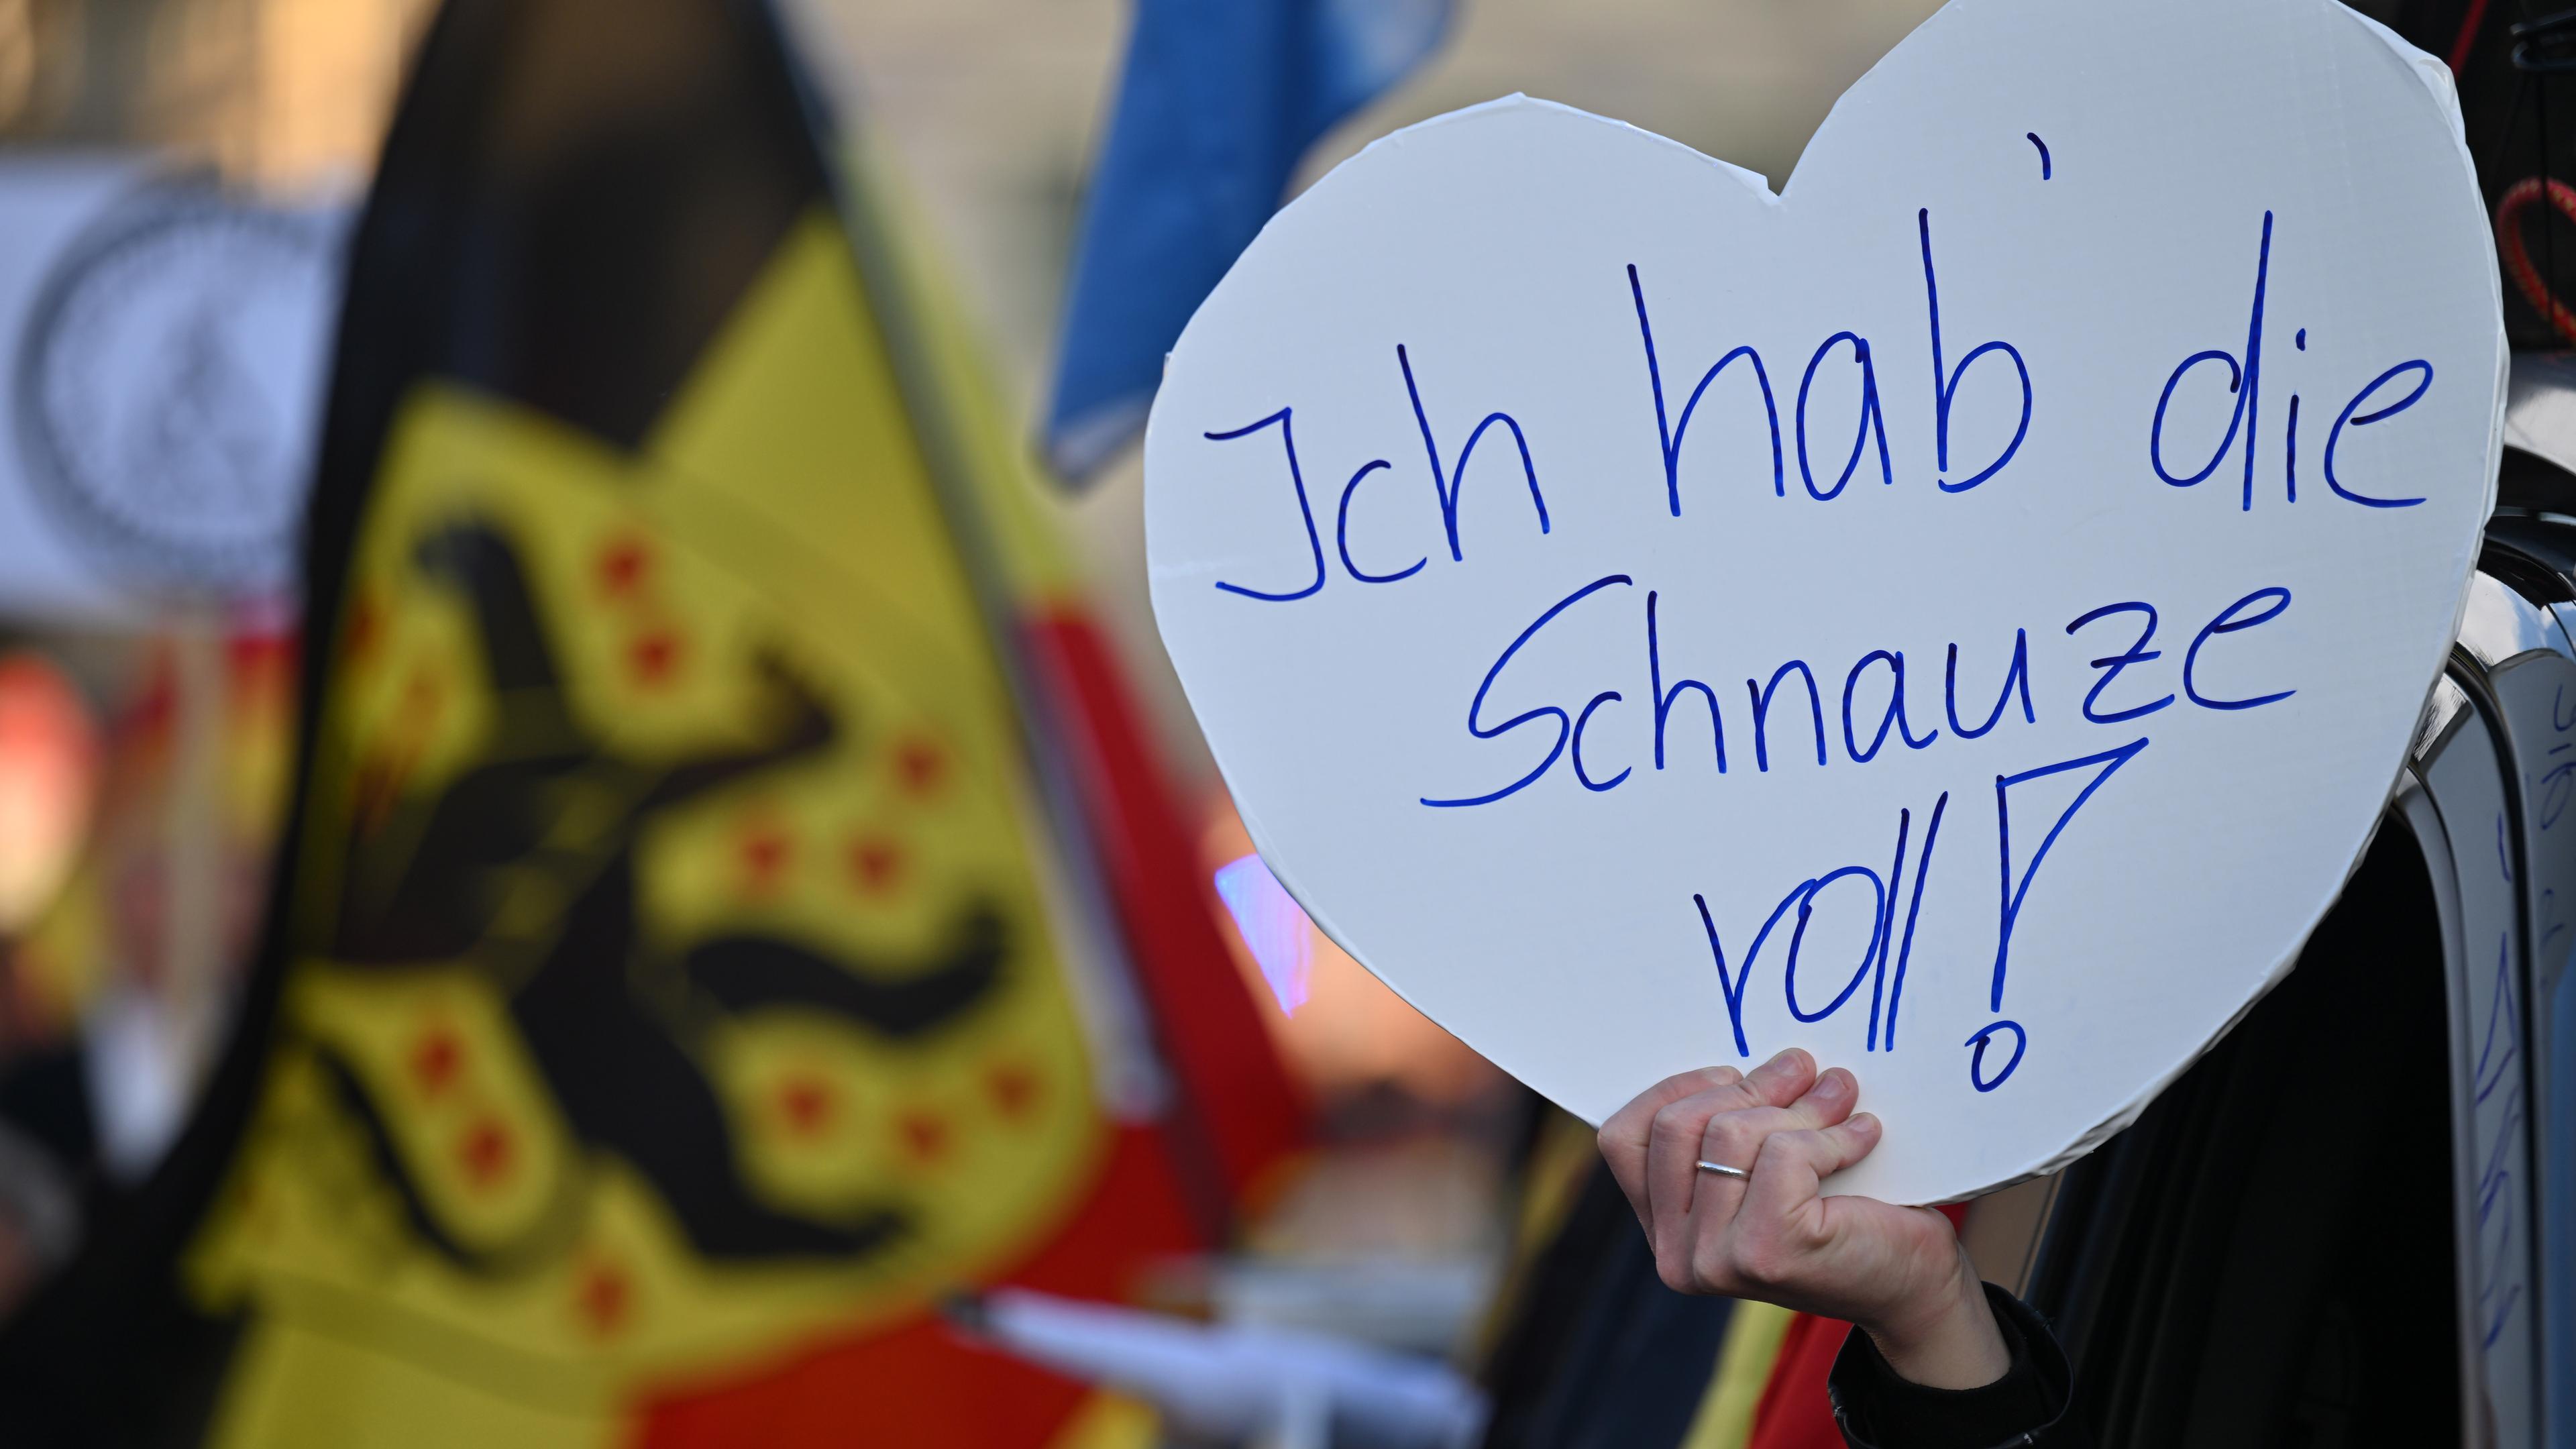 "Ich hab die Schnauze voll" steht auf einem Plakat während einer Kundgebung der AfD am Theaterplatz in Weimar